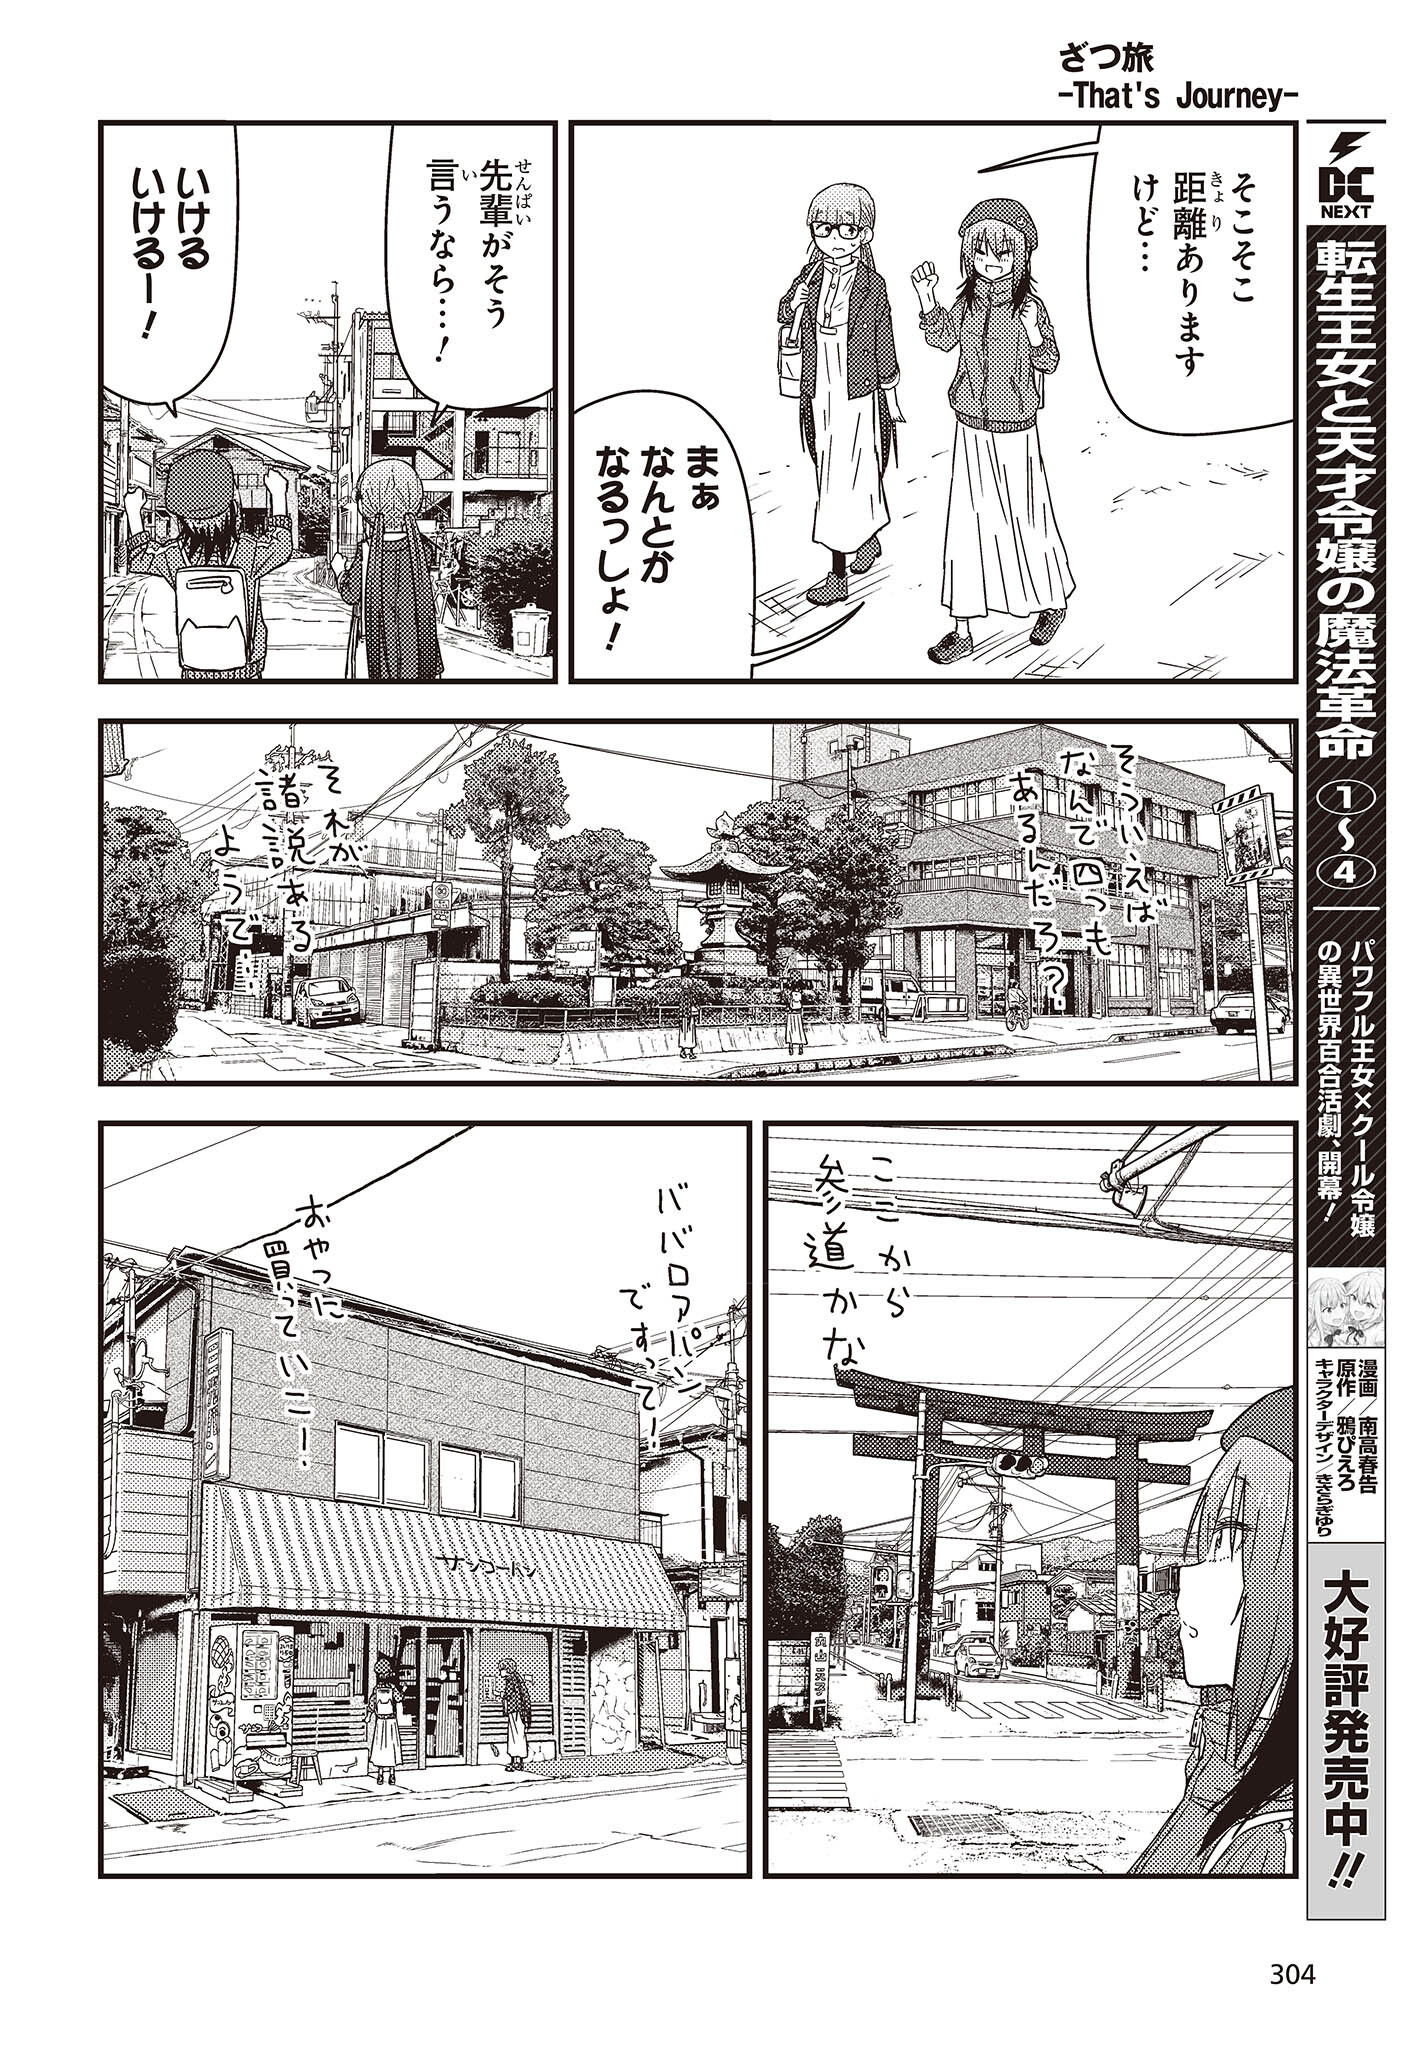 ざつ旅-That’s Journey- 第28話 - Page 8